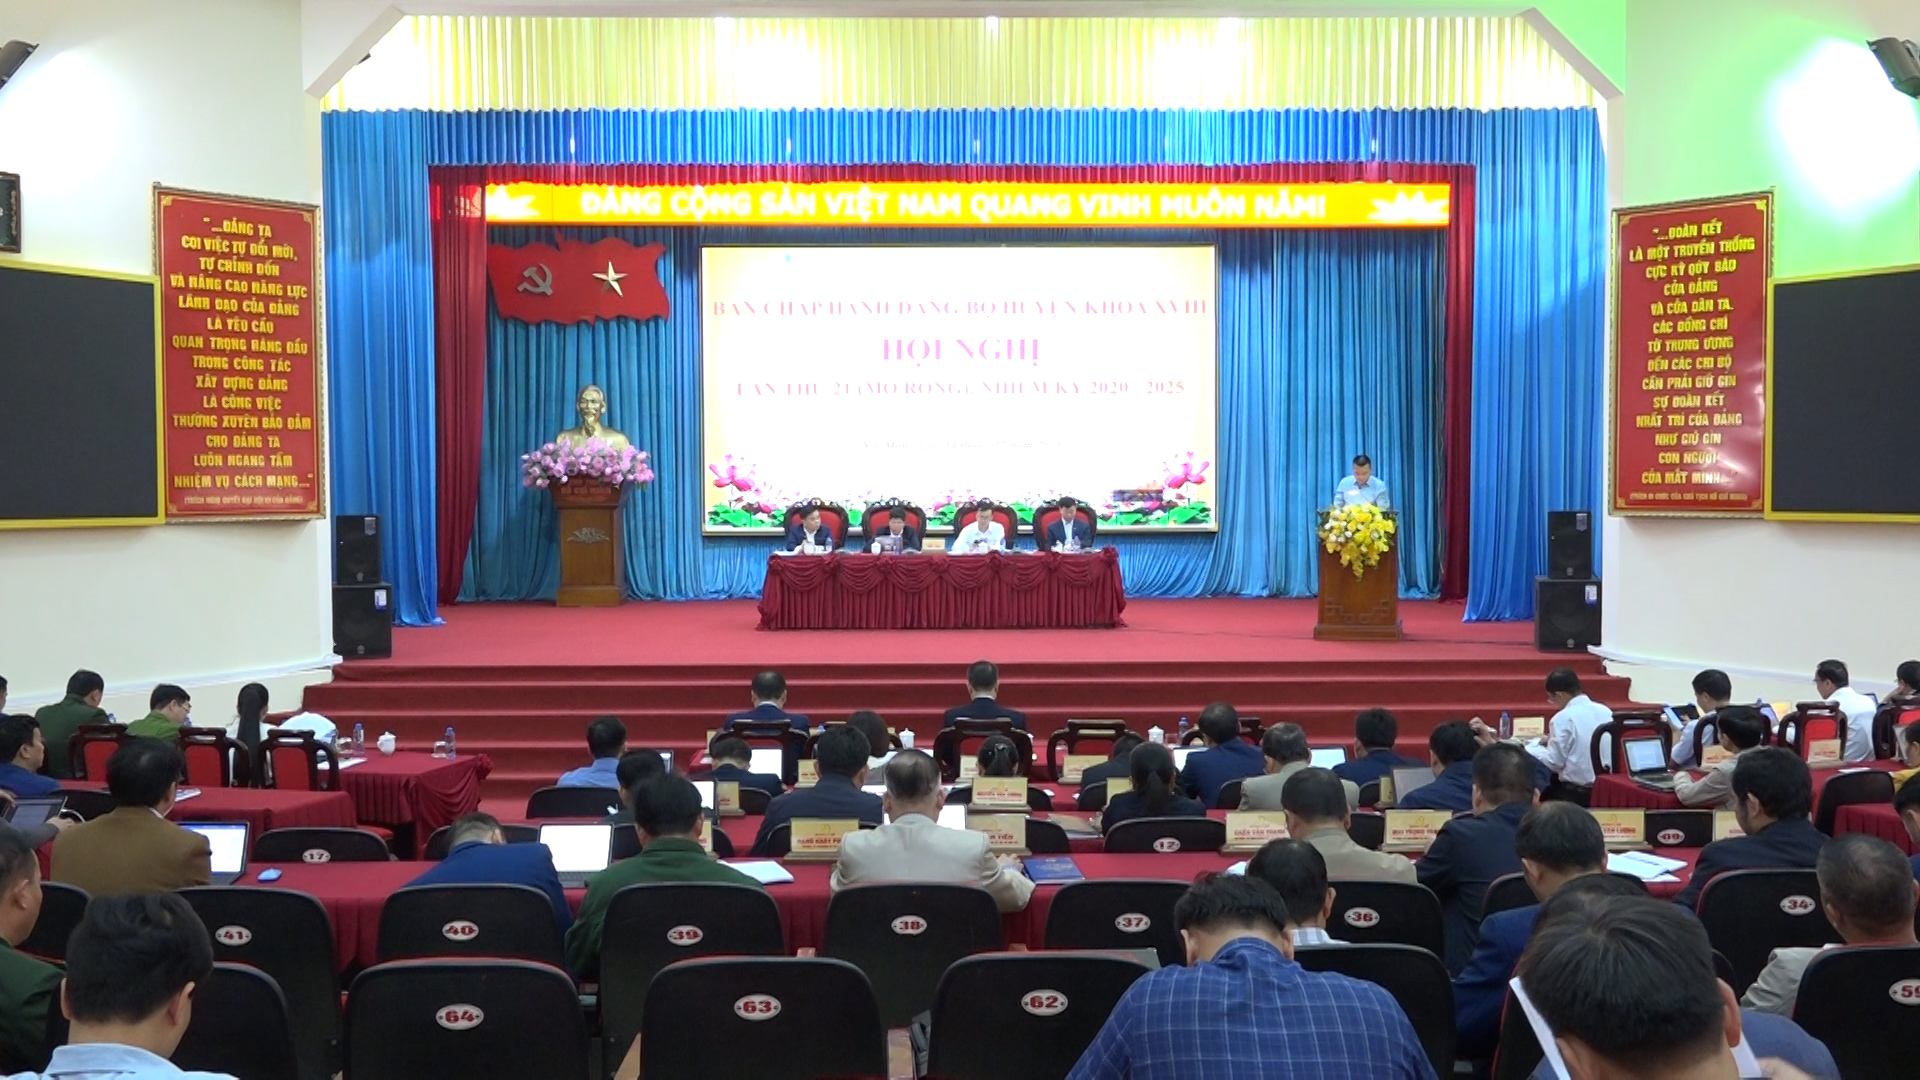 Hội nghị Ban Chấp hành Đảng bộ huyện Xín Mần lần thứ 21 (mở rộng)